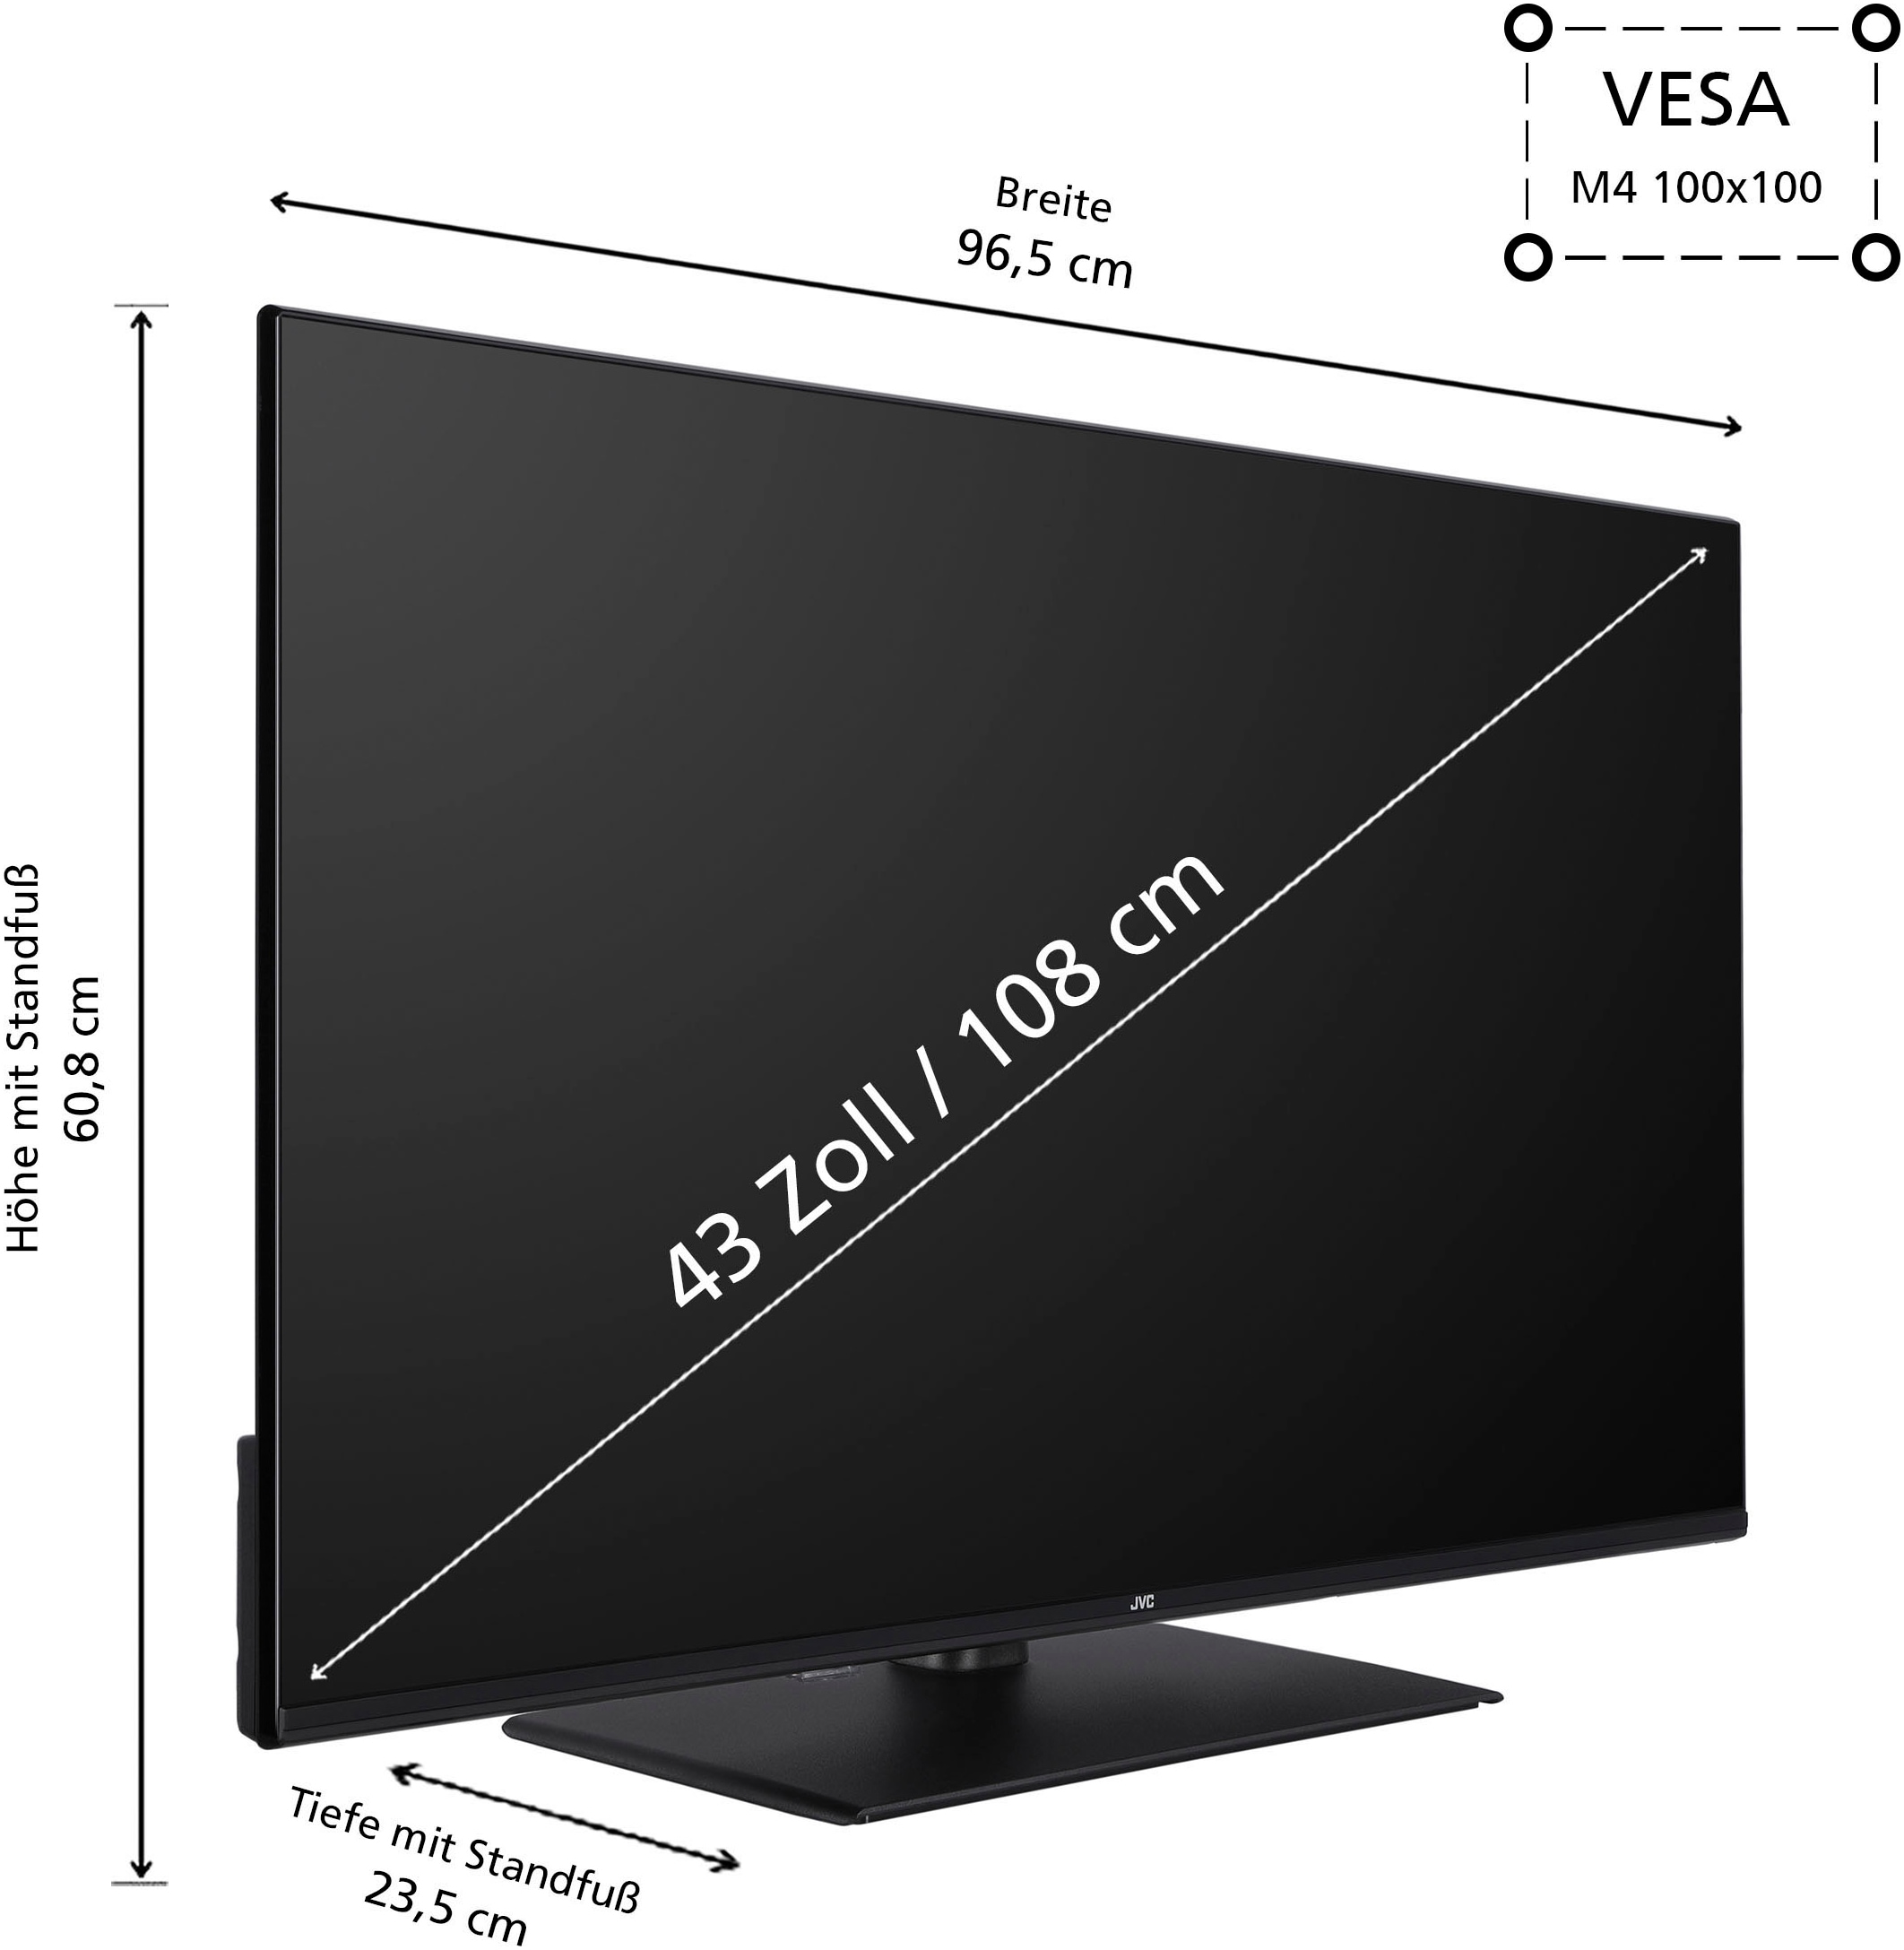 JVC LED-Fernseher, 108 cm/43 Zoll, Full HD, Smart-TV